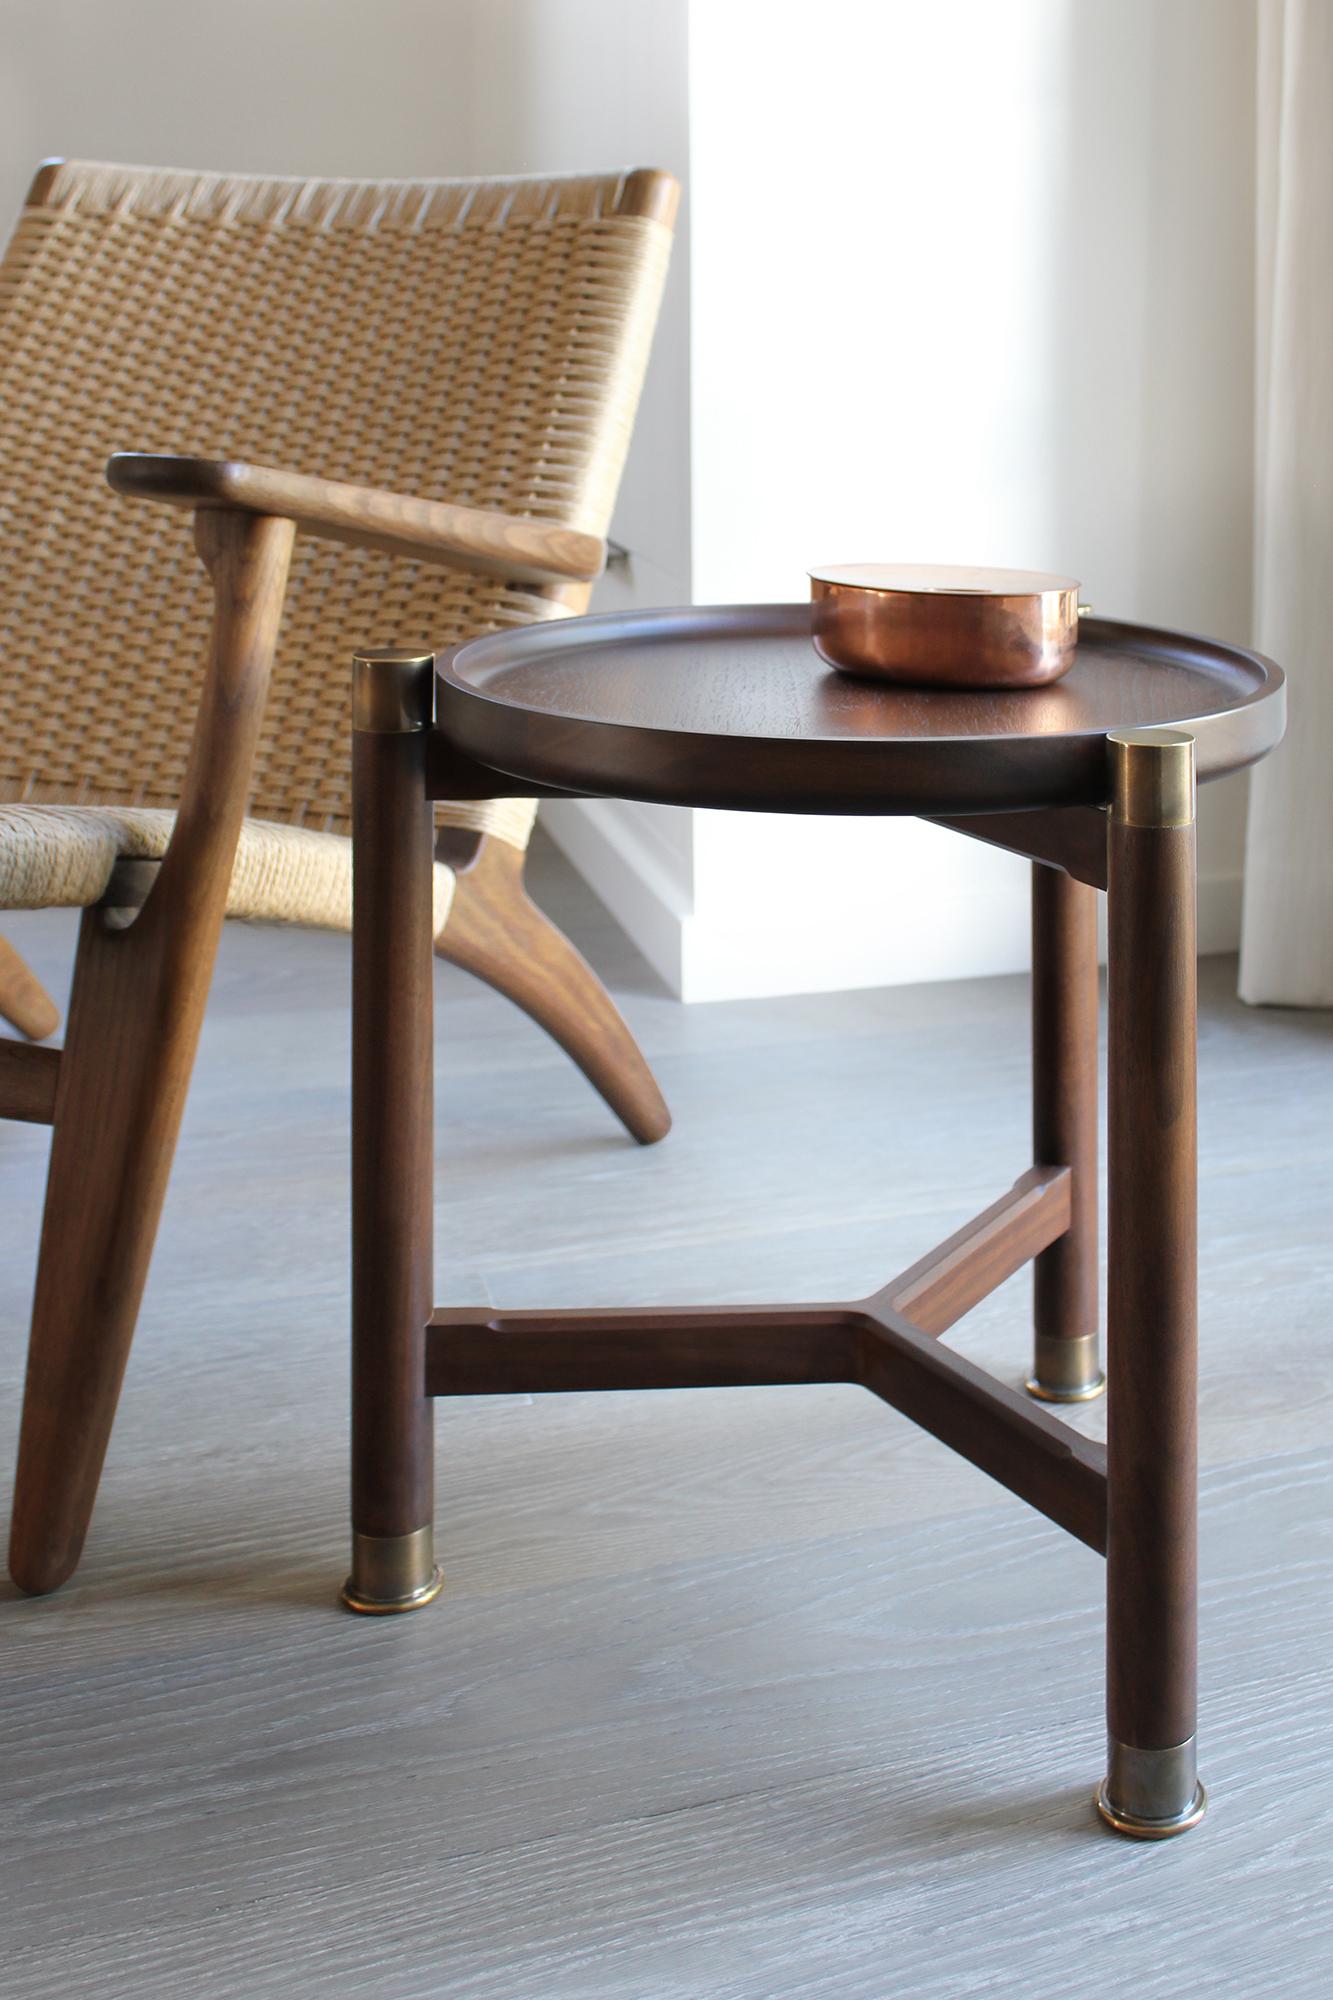 La table d'appoint Otto est une table de petite taille à la forme classique et simple. 
Disponible en noyer ou en chêne, il est doté d'un plateau de coupe rond, d'importantes ferrures en laiton antique et d'élégants montants chanfreinés. La